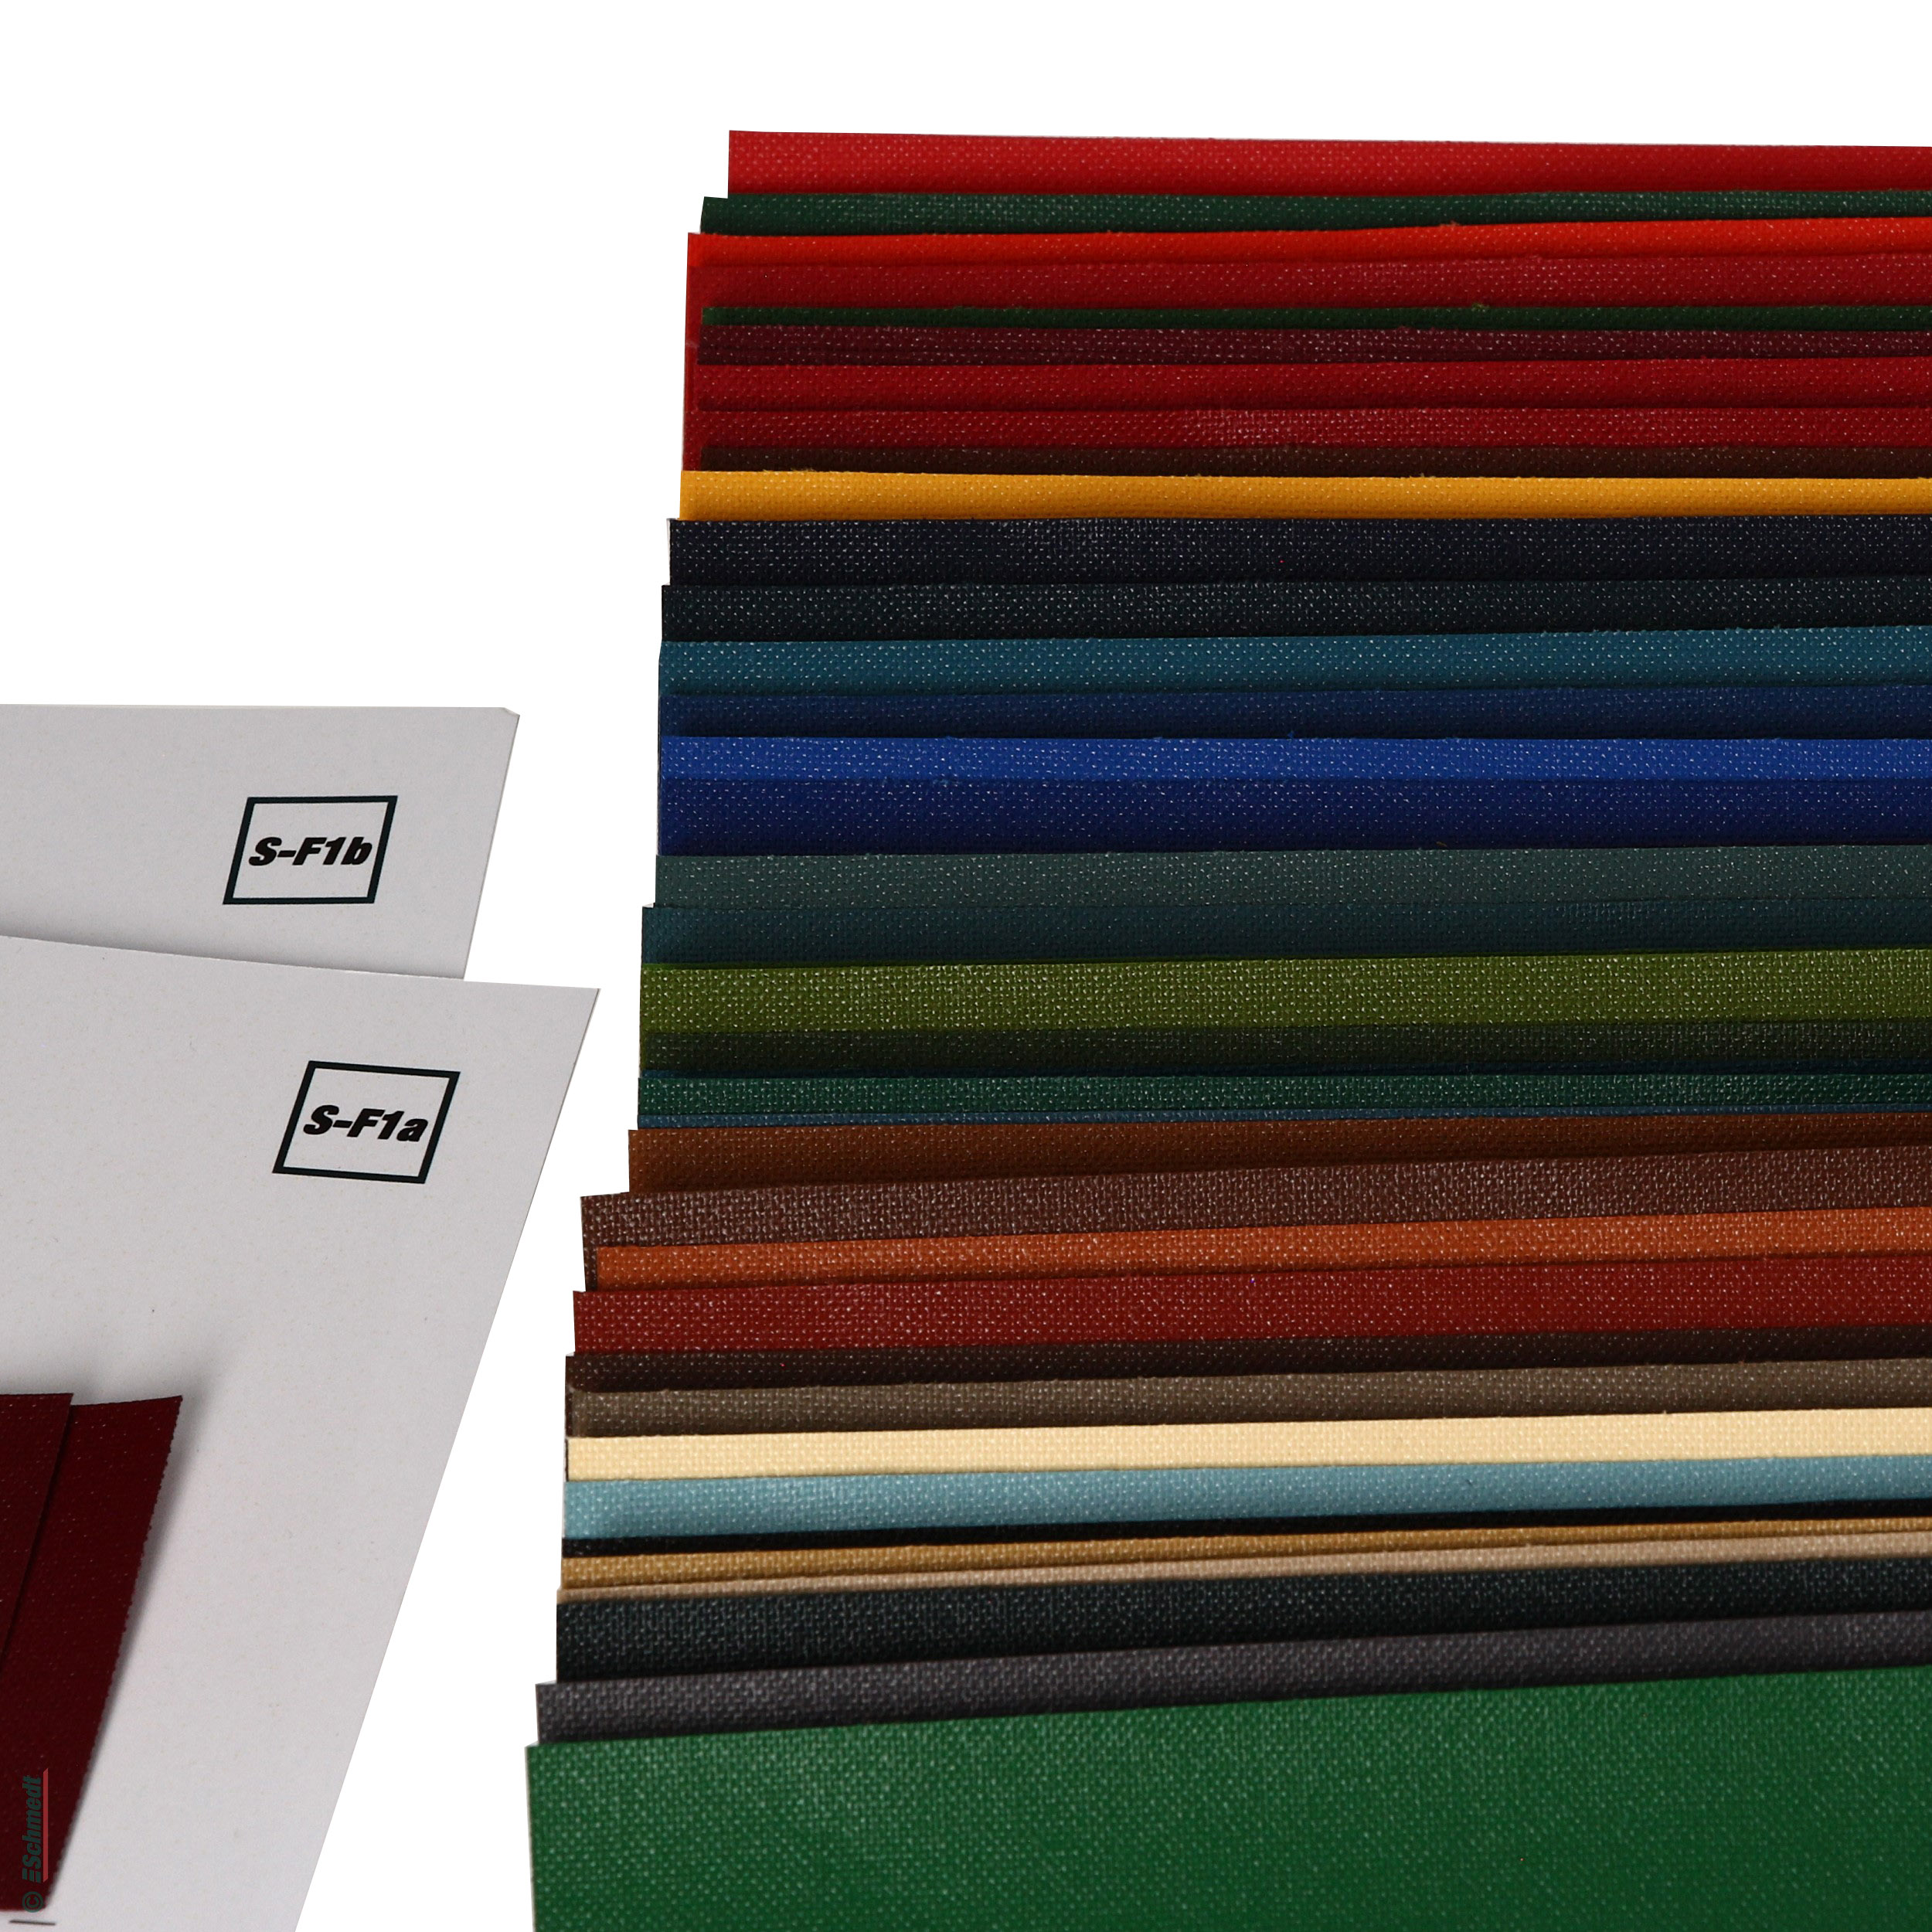 Paquete de muestras - Englisch Buckram - tela de biblioteca - Paquete de muestras con muestras DIN A4 de los 46 colores estándar.... - imagen-1